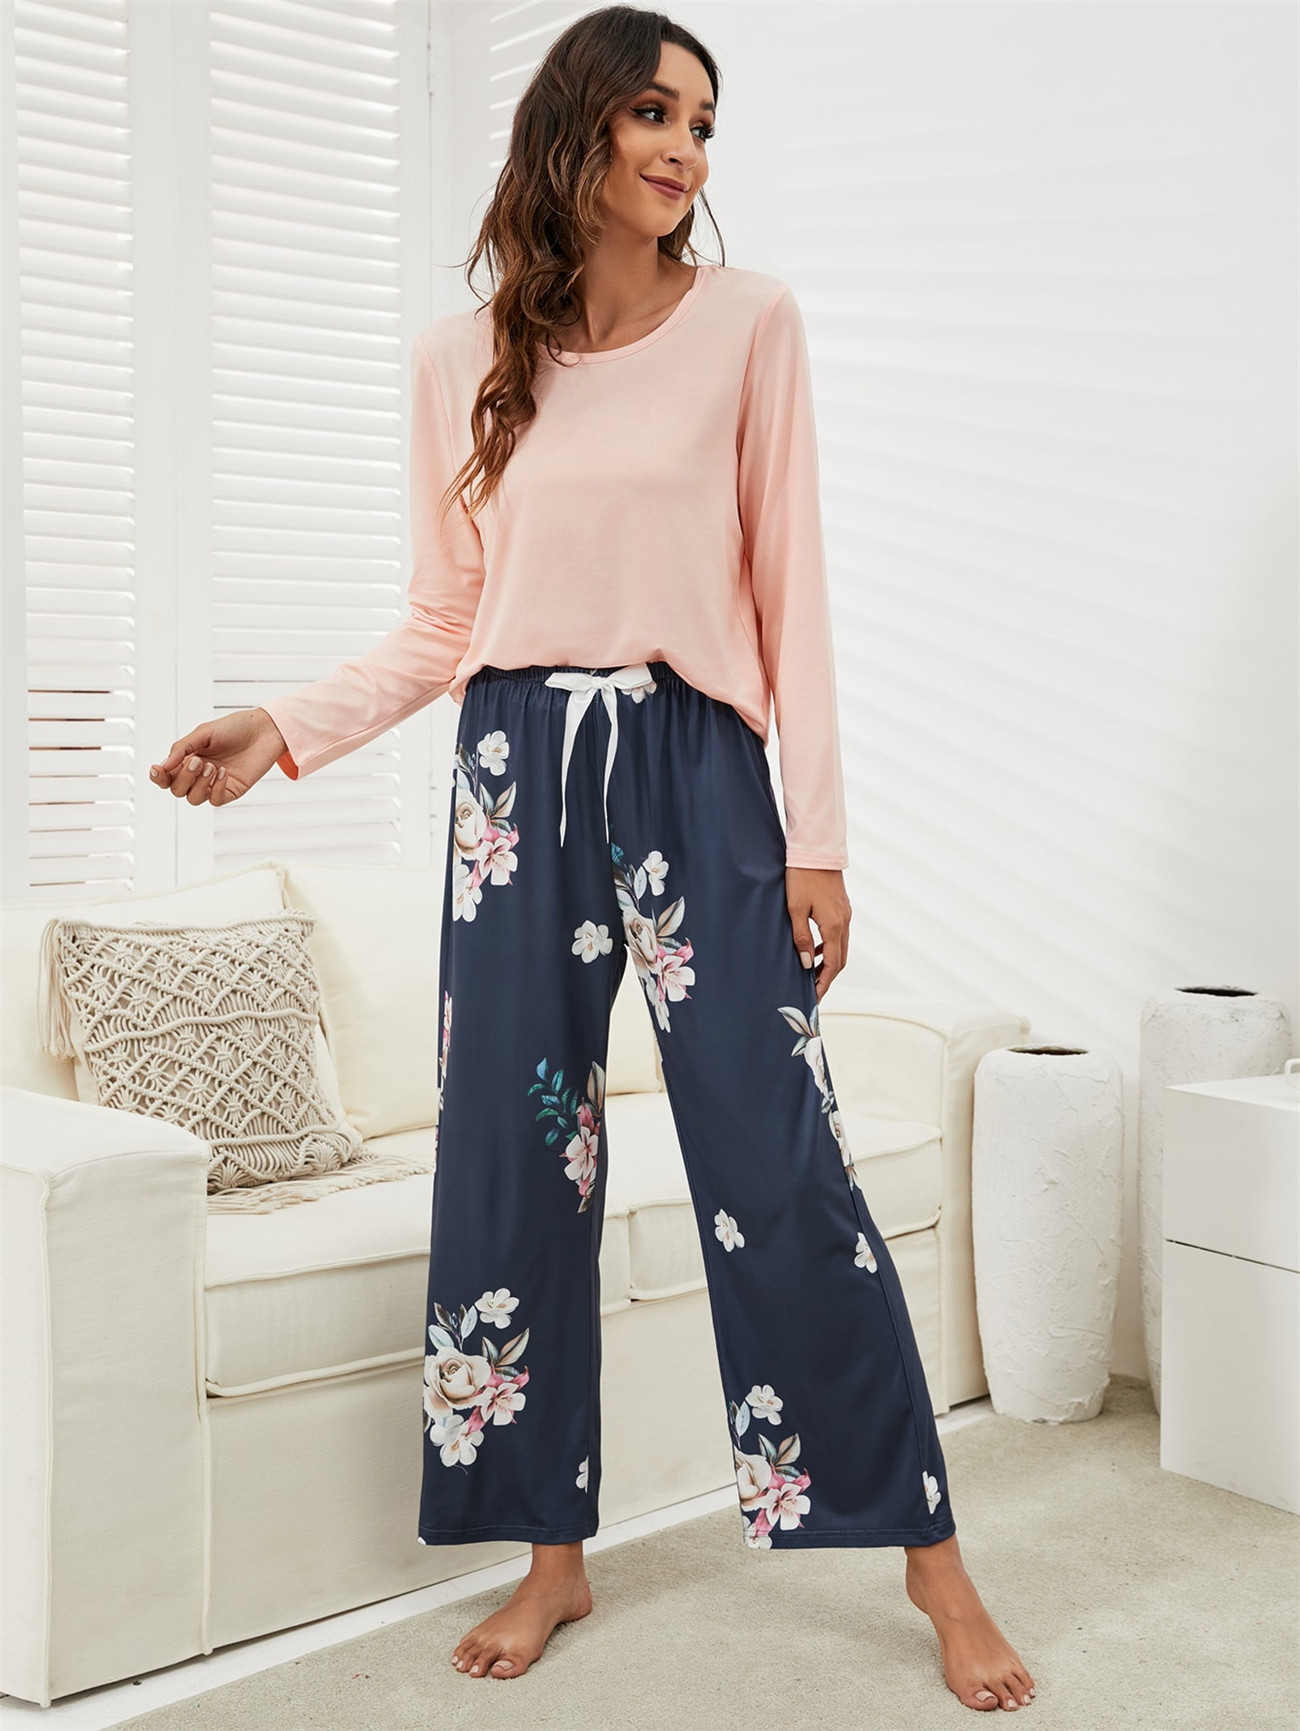 Nuovo pigiama stampato floreale 2 pezzi pigiami donna Casual girocollo manica lunga elastico in vita pigiami da donna retrò set